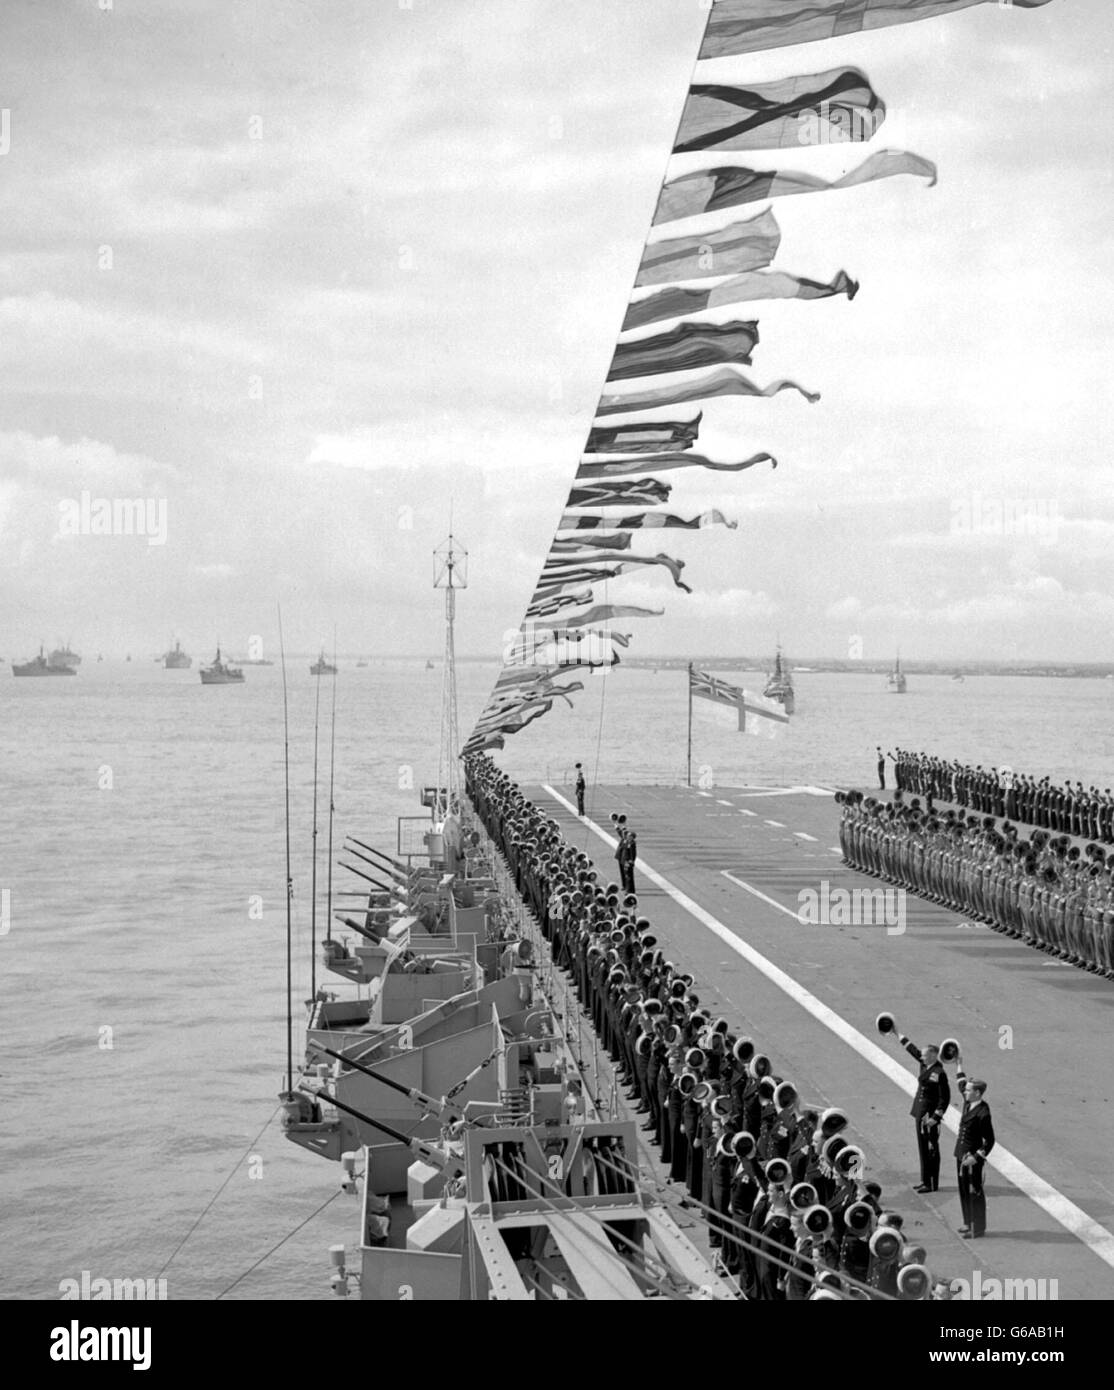 Die Besatzung des australischen Flugzeugträgers Sydney steht auf dem Deck des Schiffes, um die Königin während der Krönung der Marine in Spithead zu bejubeln. Die Queen, an Bord der Royal Yacht, dem Dispatch-Schiff Surprise, übergab die Linien britischer, Commonwealth- und ausländischer Kriegsschiffe. Stockfoto